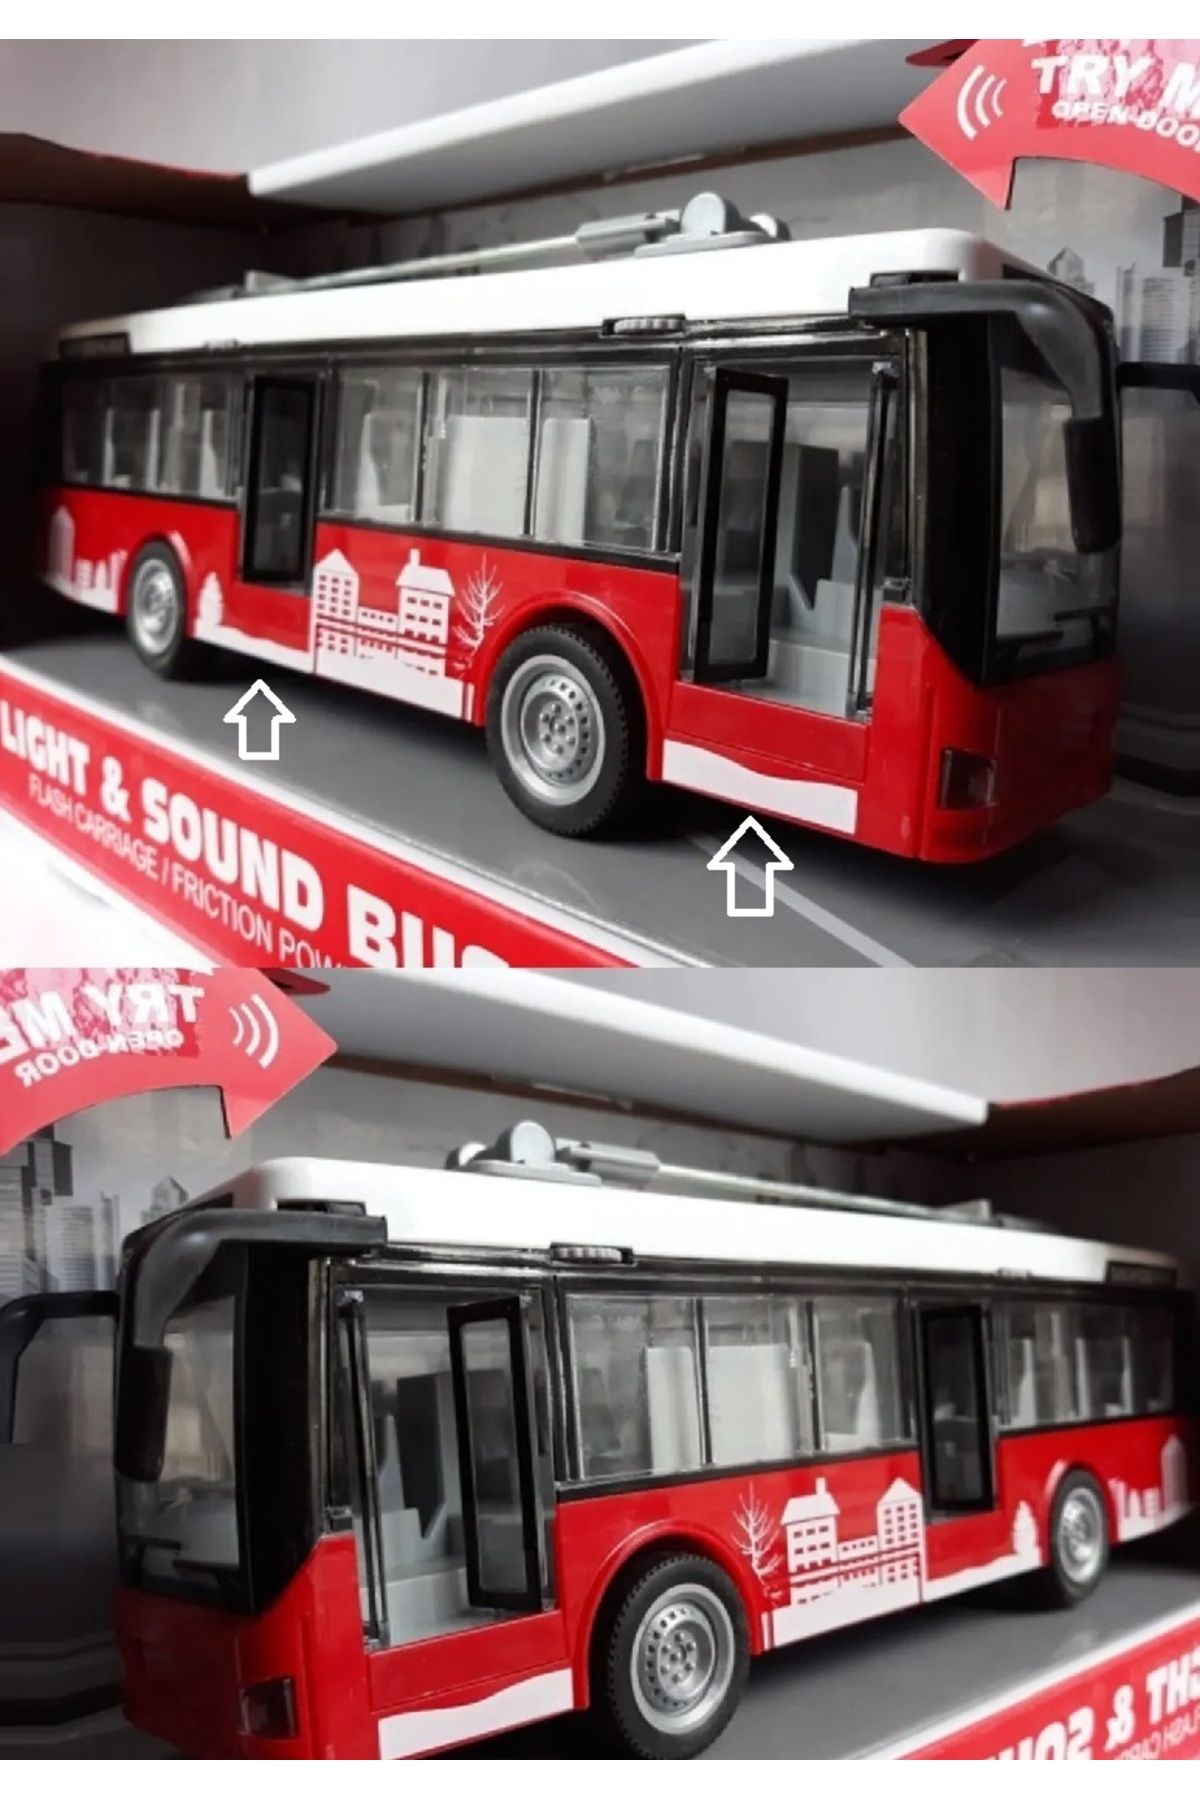 OYUNCAKSAHİLİ Taksim Troleybüs Işıklı Sesli Kırılmaz Büyük Oyuncak Otobüs Kapı Açılır Sesli Efekt Piller Dahil